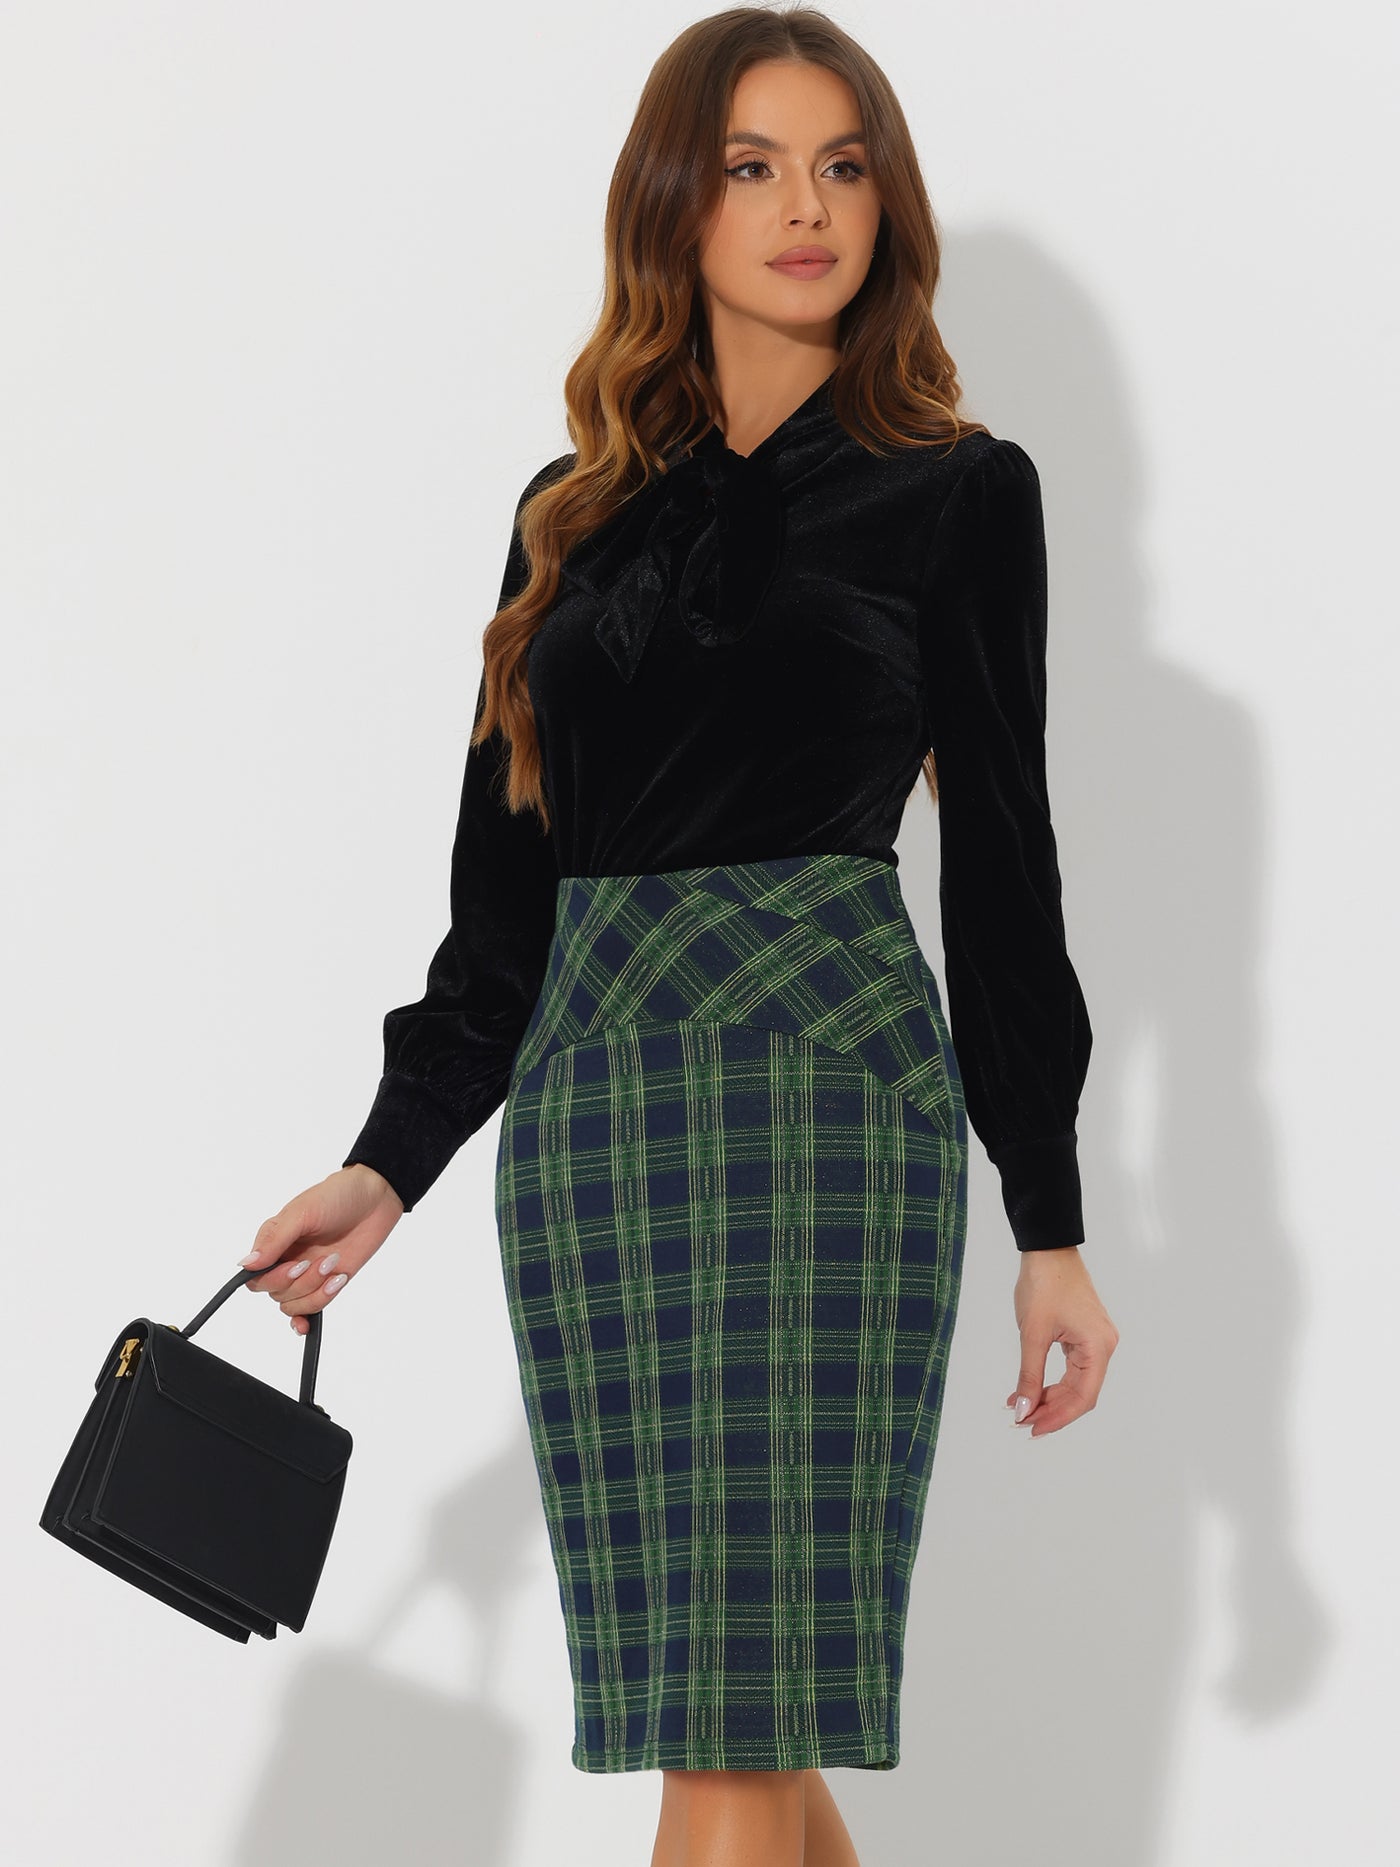 Allegra K Women's Elastic High Waist Knee Length Plaid Pencil Skirt with Side Zipper